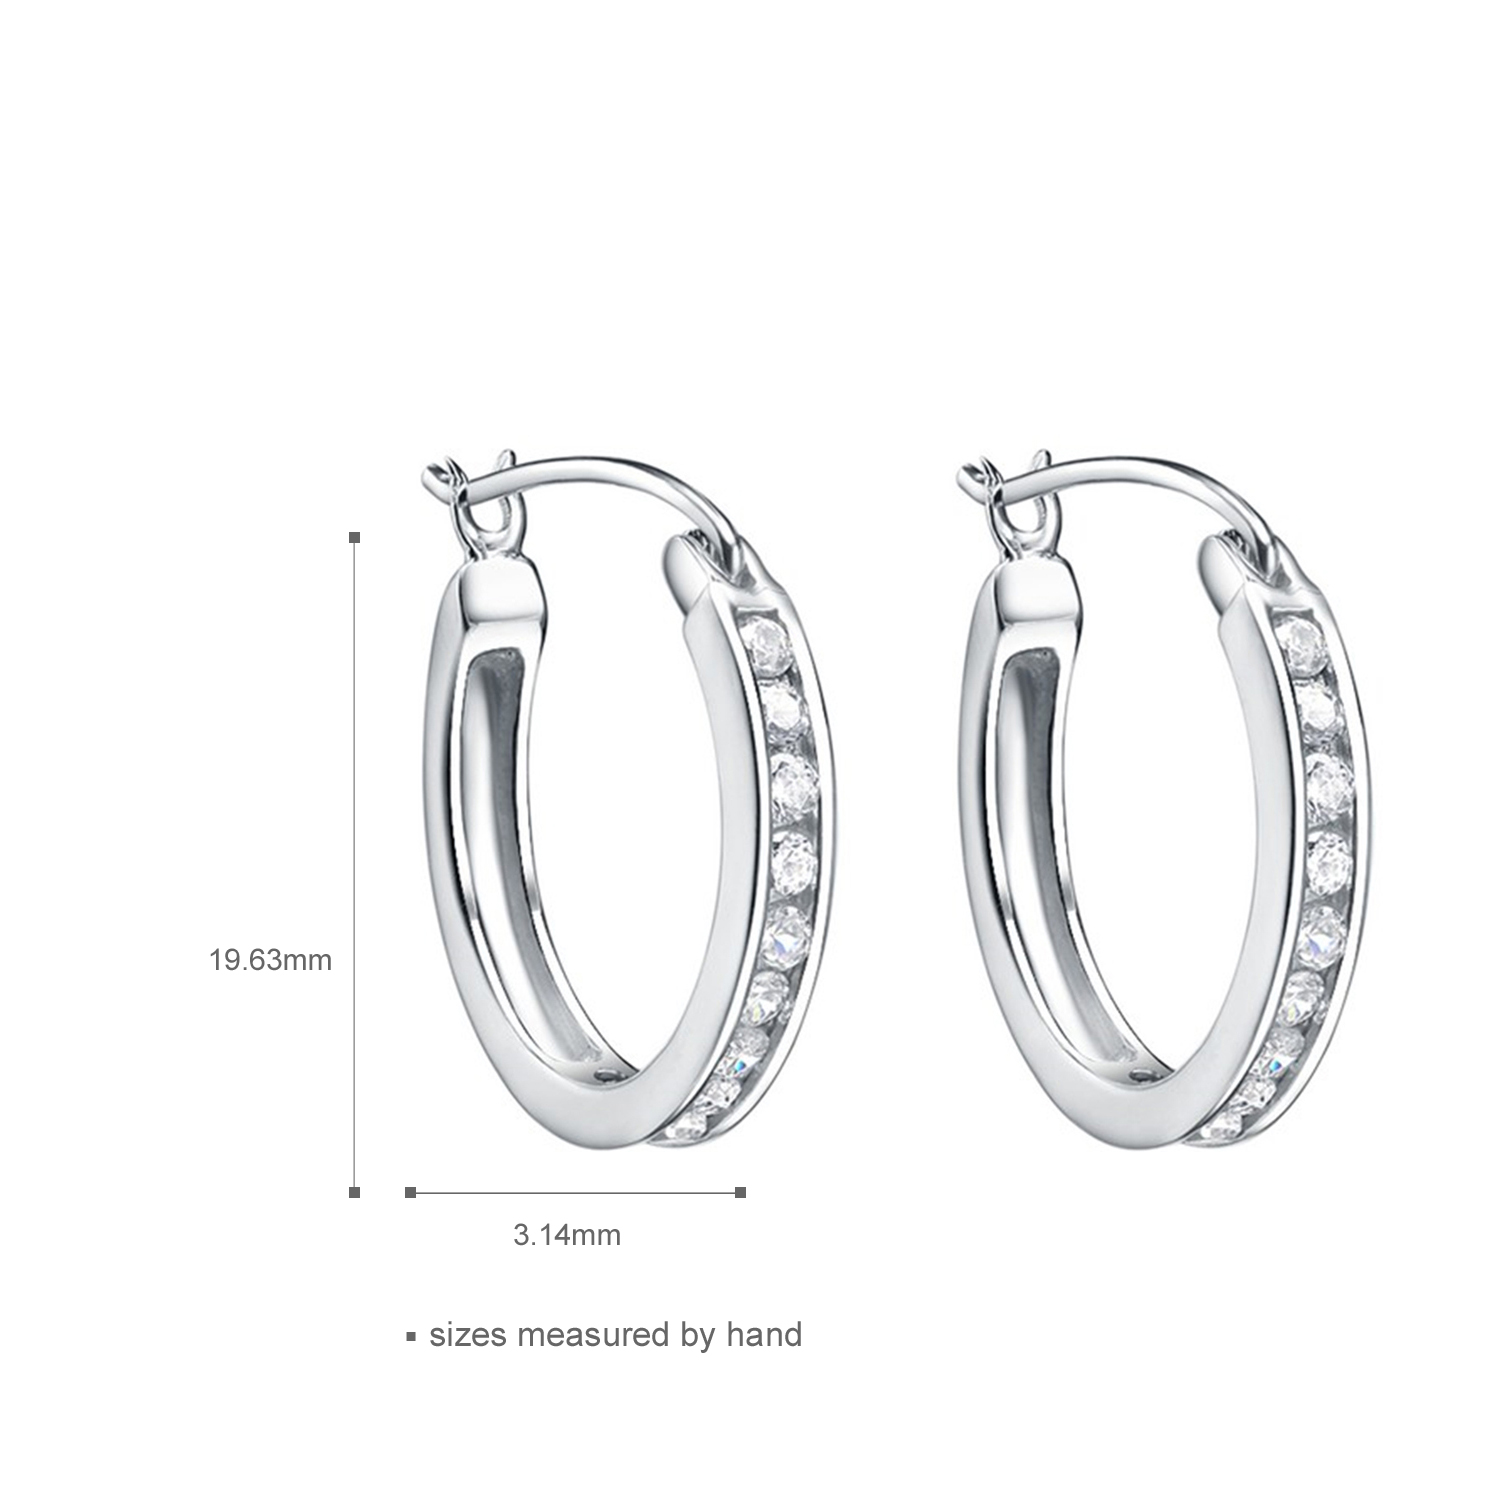 OEM&ODM welcome elegant 925 sterling silver rhodium plated CZ hoop earrings women jewelry gift(图1)